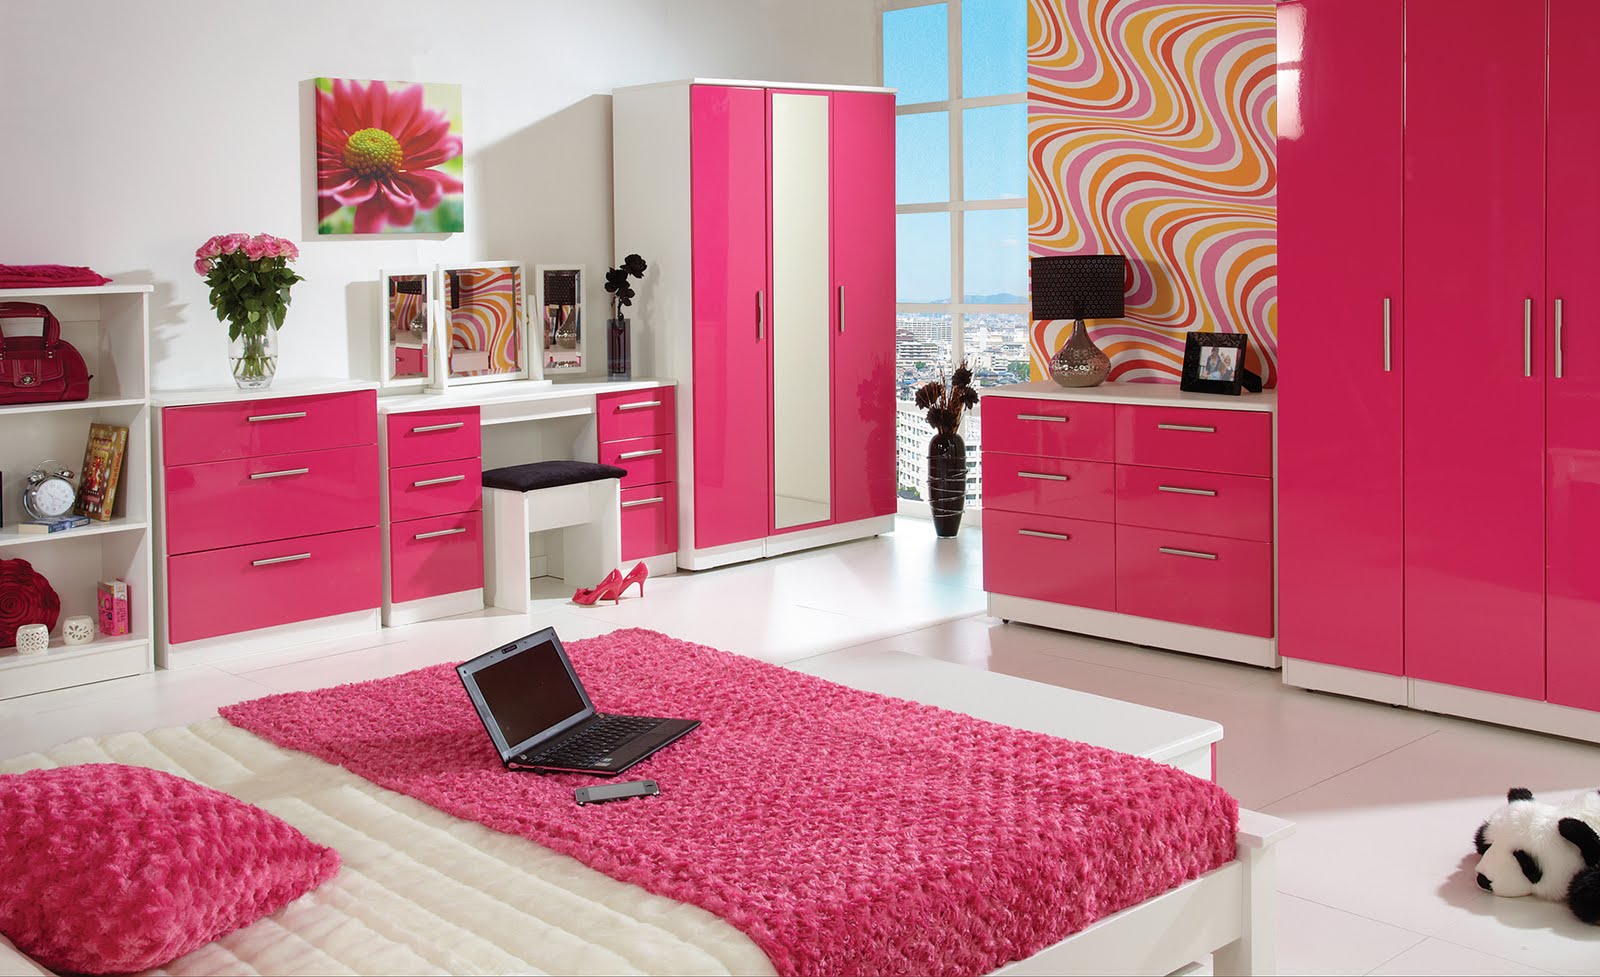 Desain Kamar Tidur Anak Perempuan Warna Pink - Arcadia ...